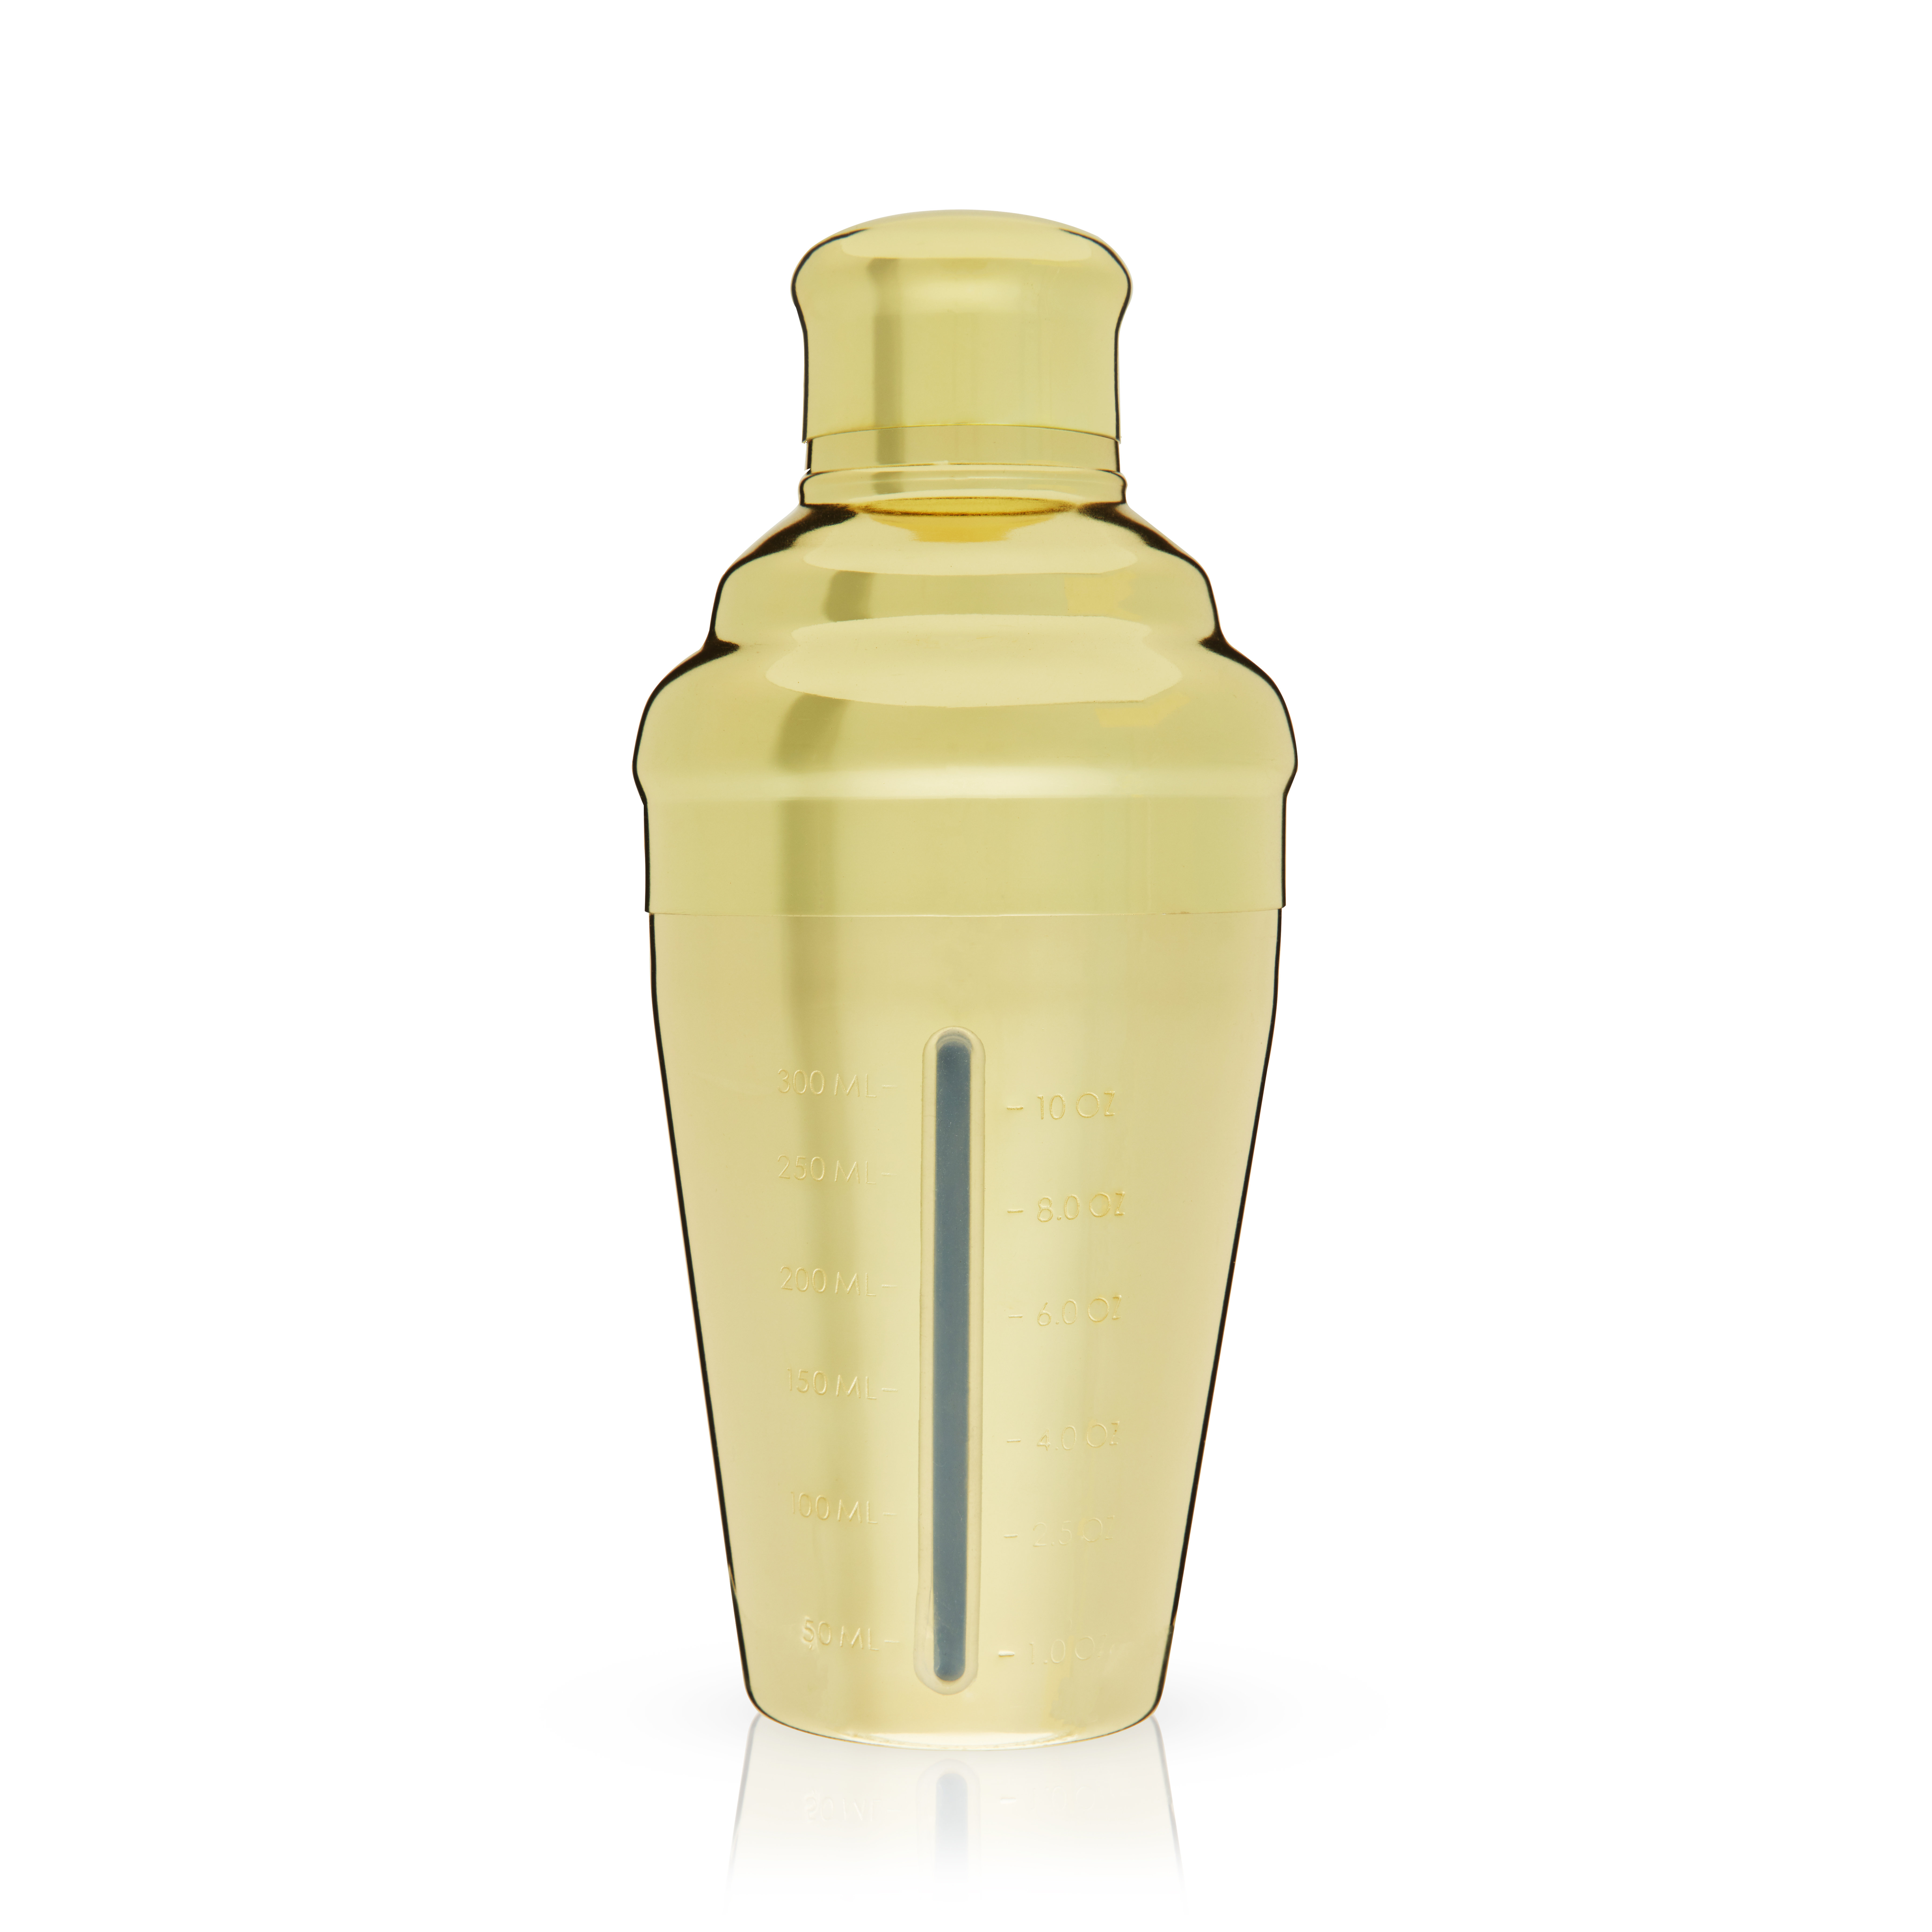 https://assets.wfcdn.com/im/33808819/compr-r85/1979/197975434/viski-gold-measured-cocktail-shaker-14-oz-measured-gold-plated-stainless-steel-shaker-with-strainer.jpg